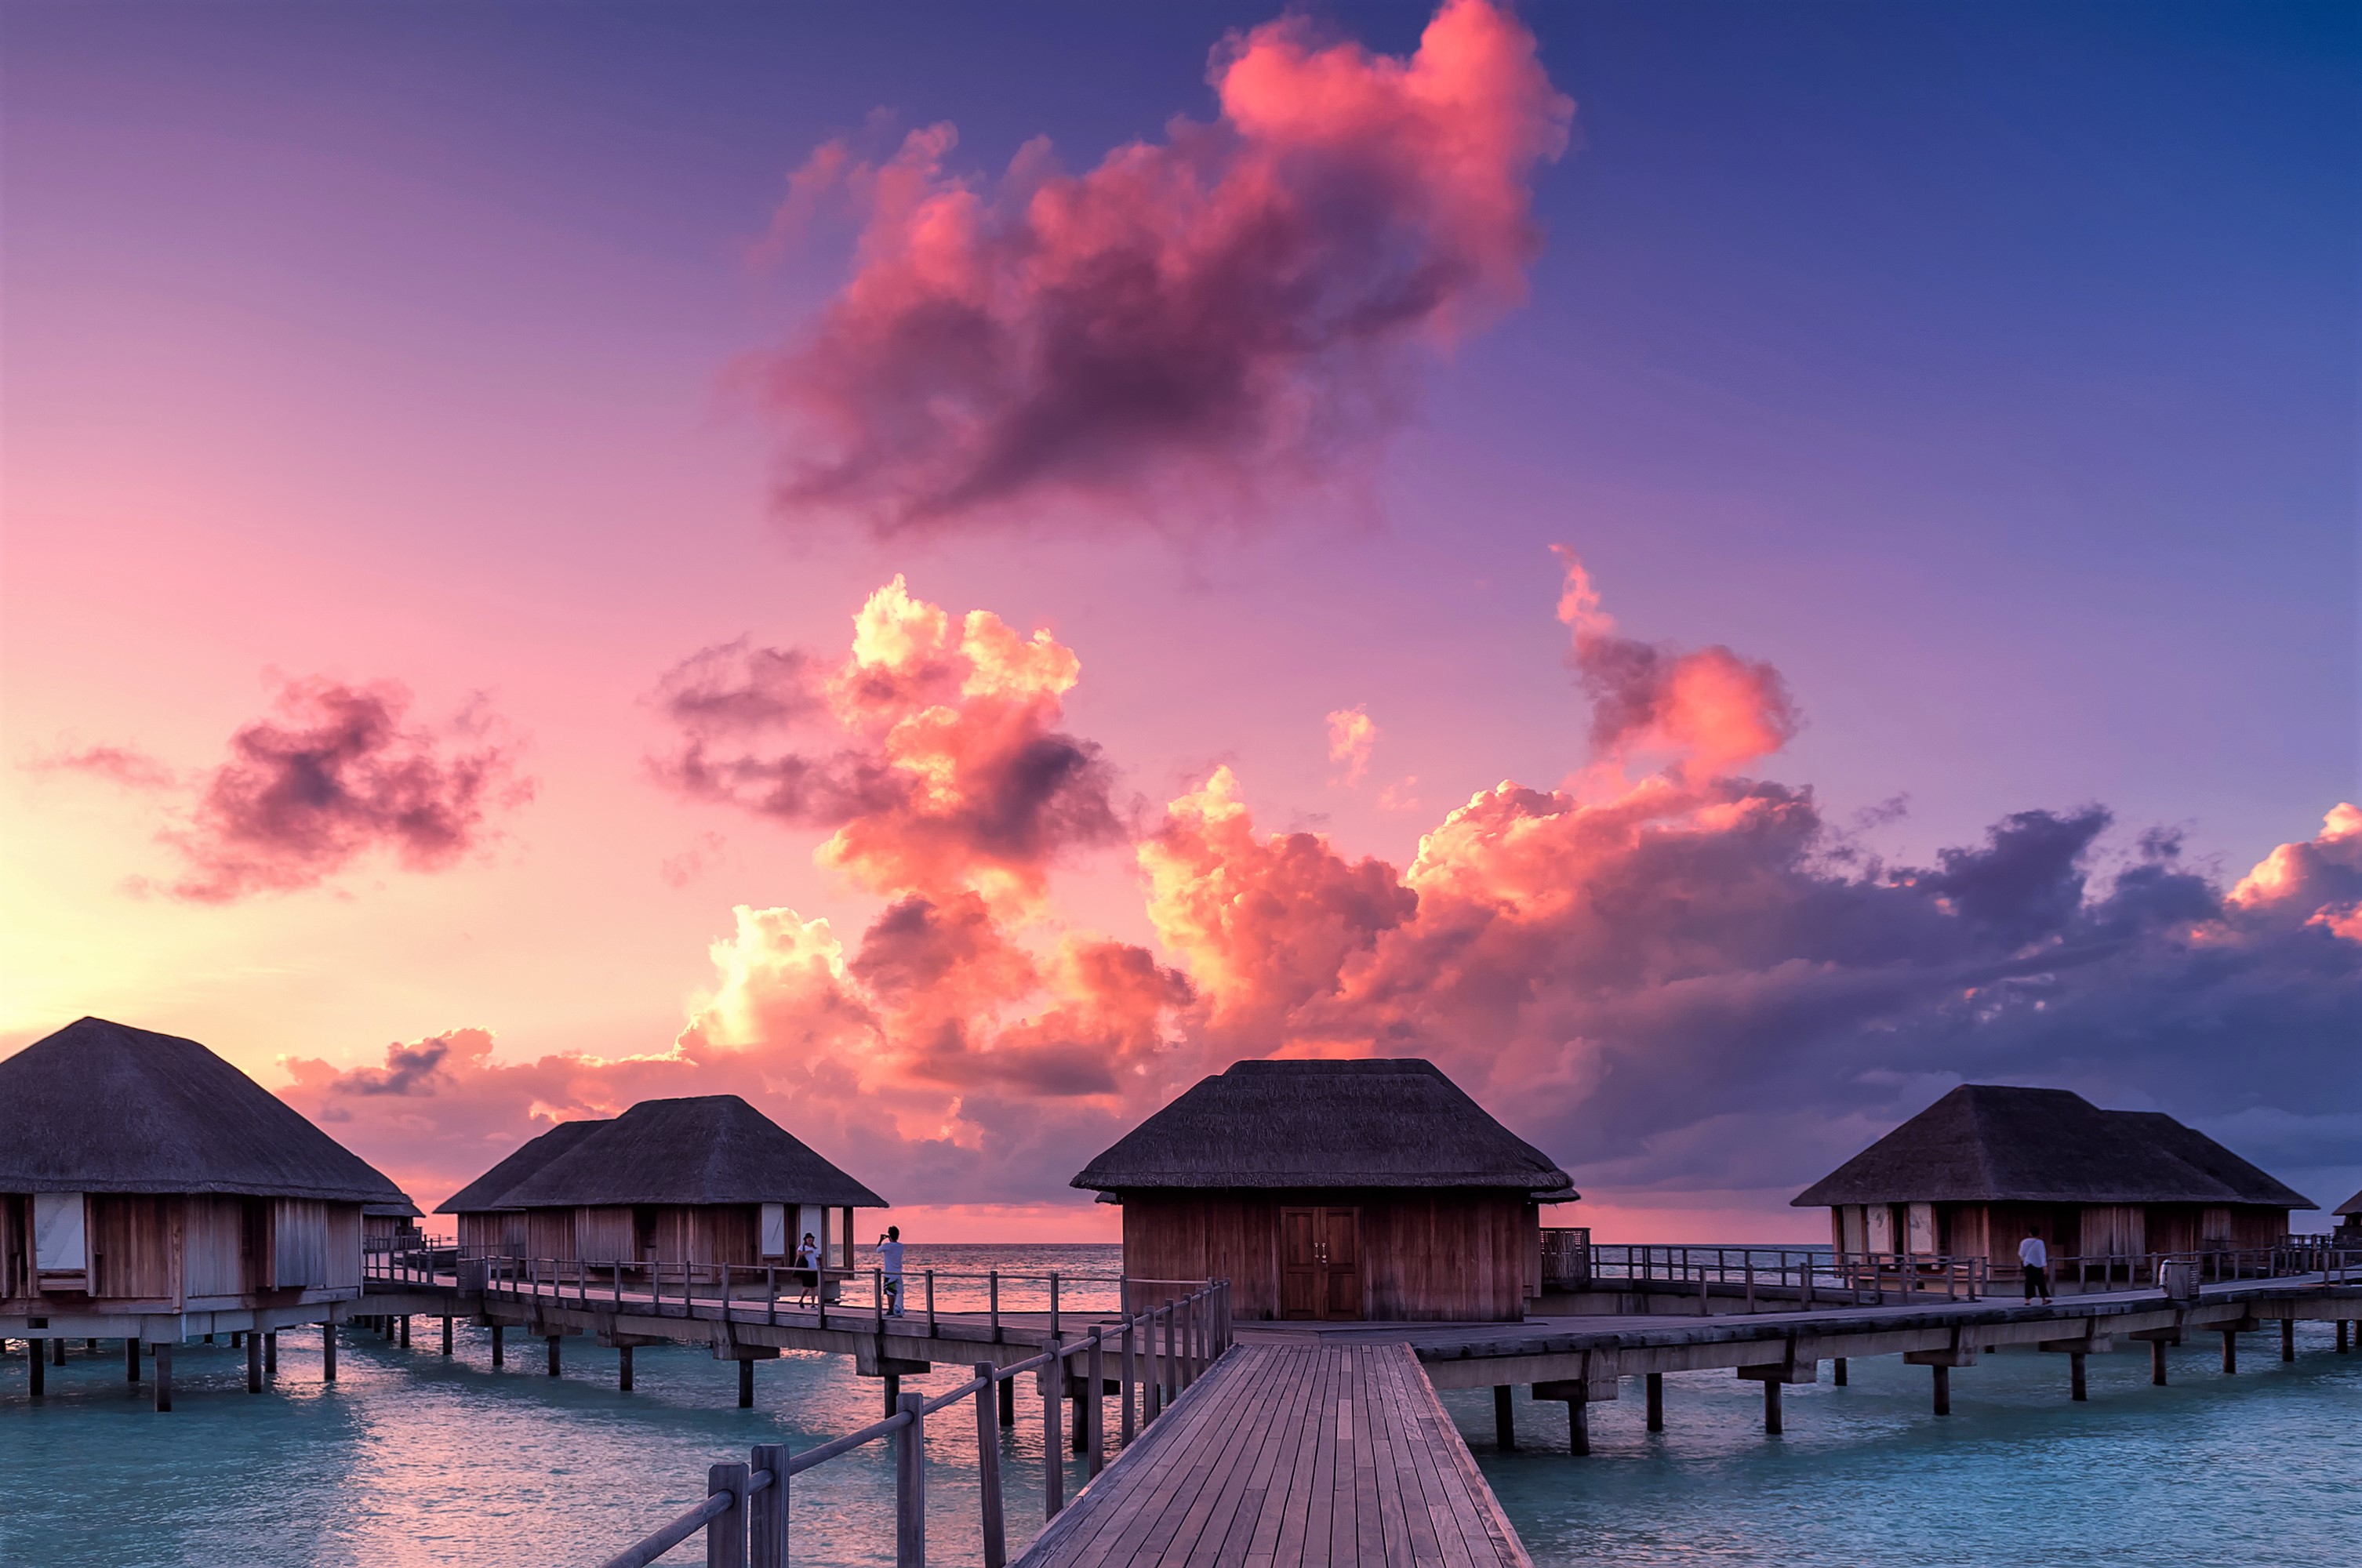 Sunset Maldives , HD Wallpaper & Backgrounds